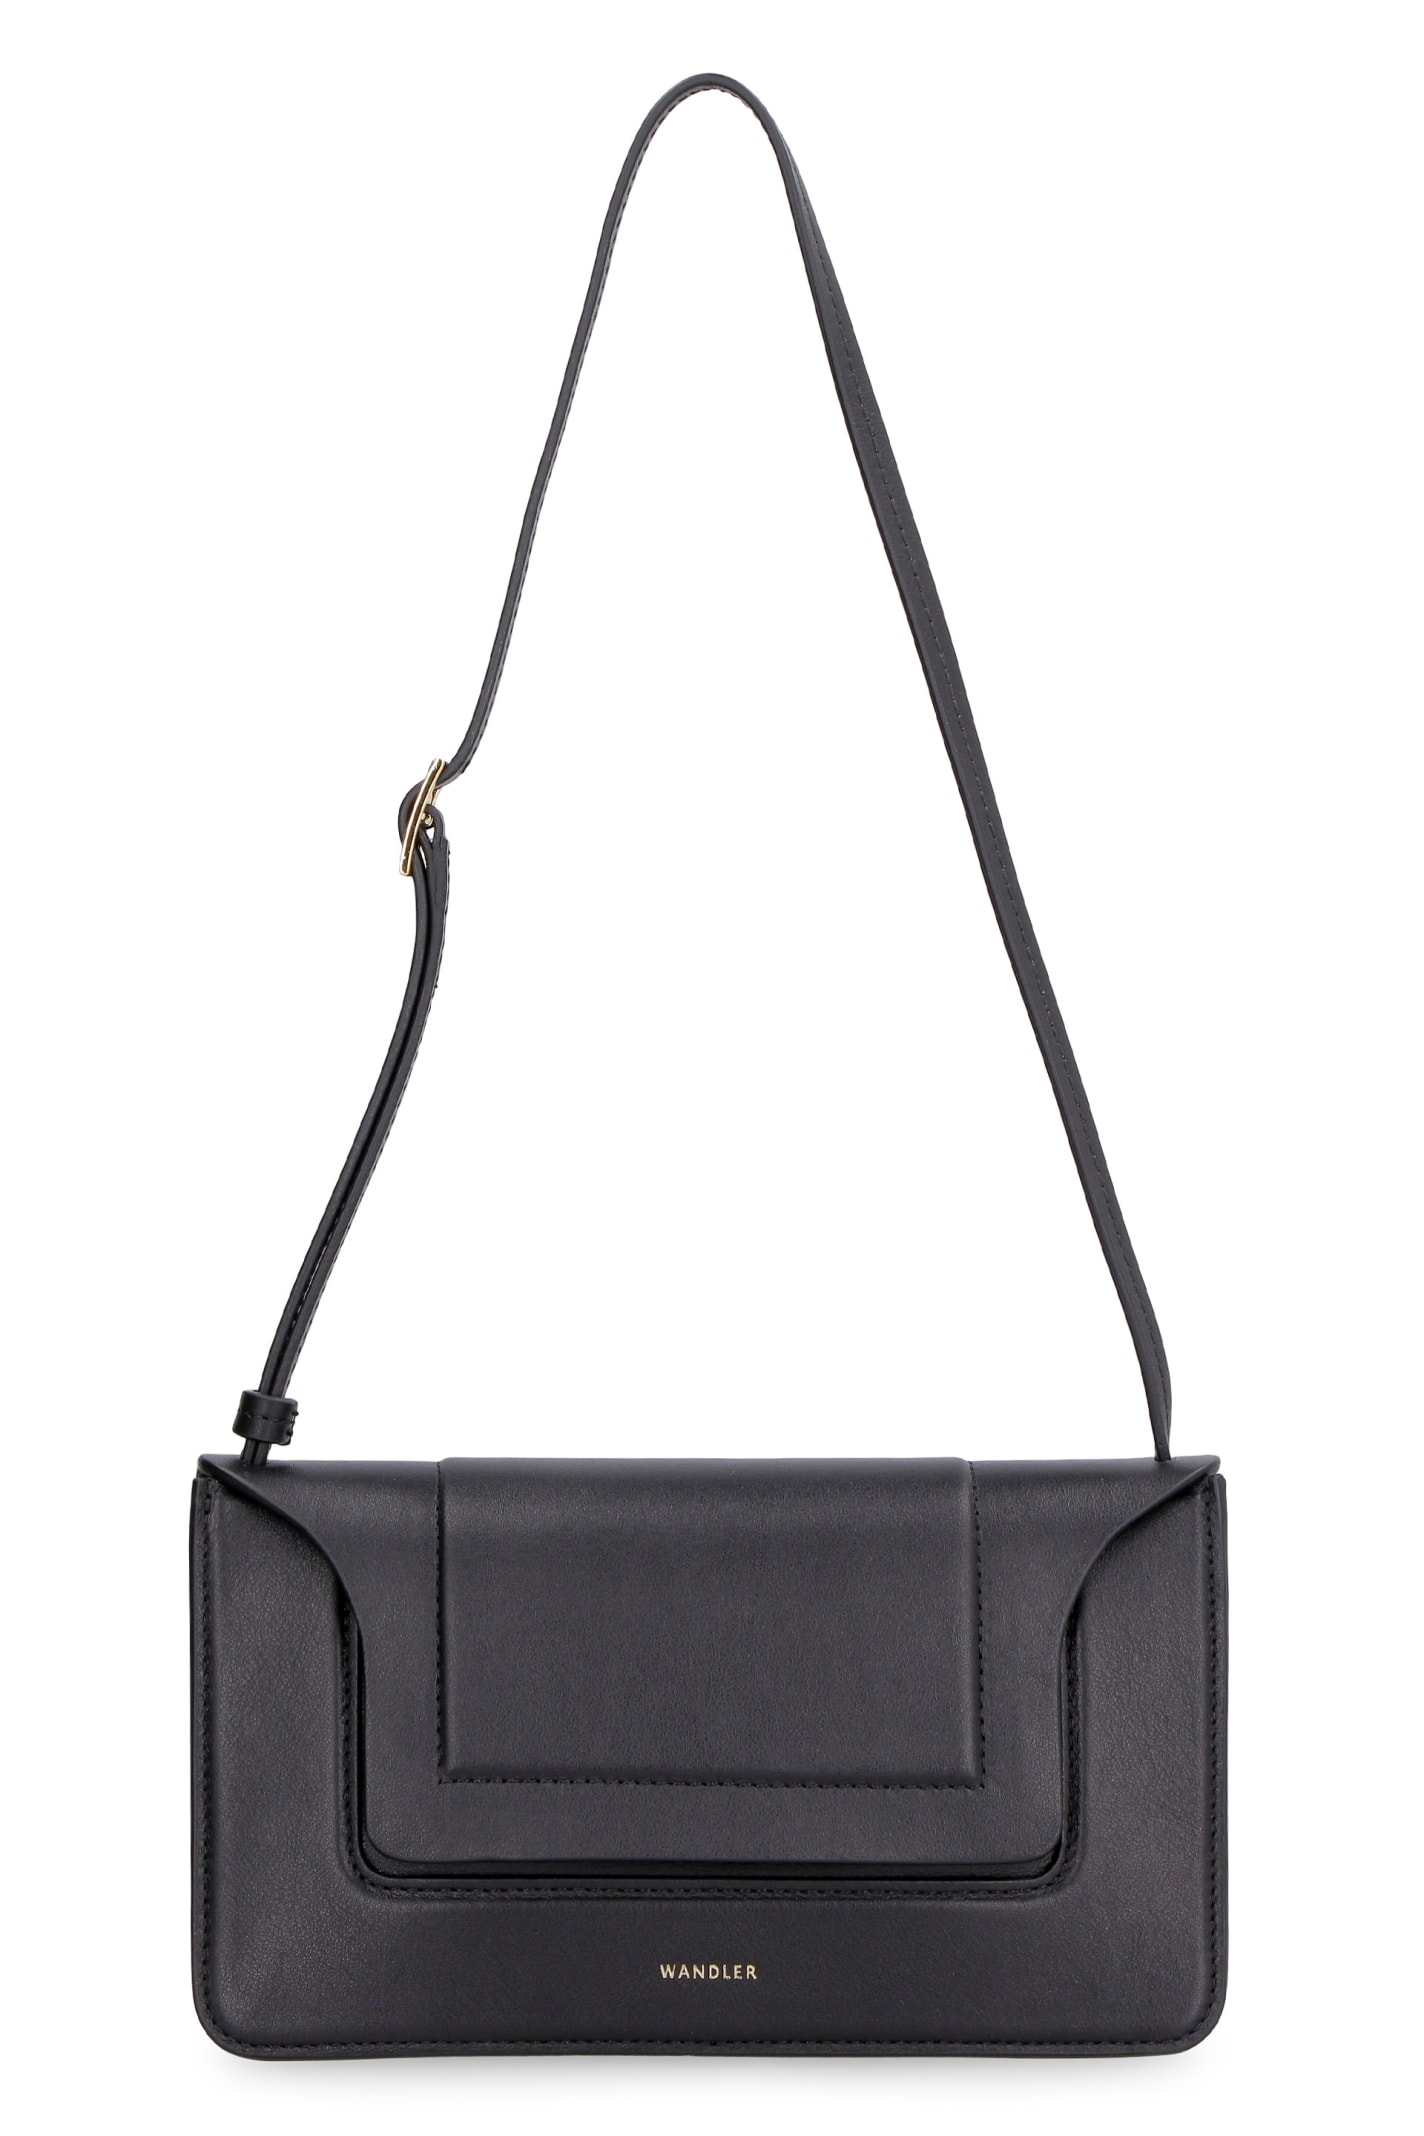 Wandler Penelope Mini Leather Shoulder Bag